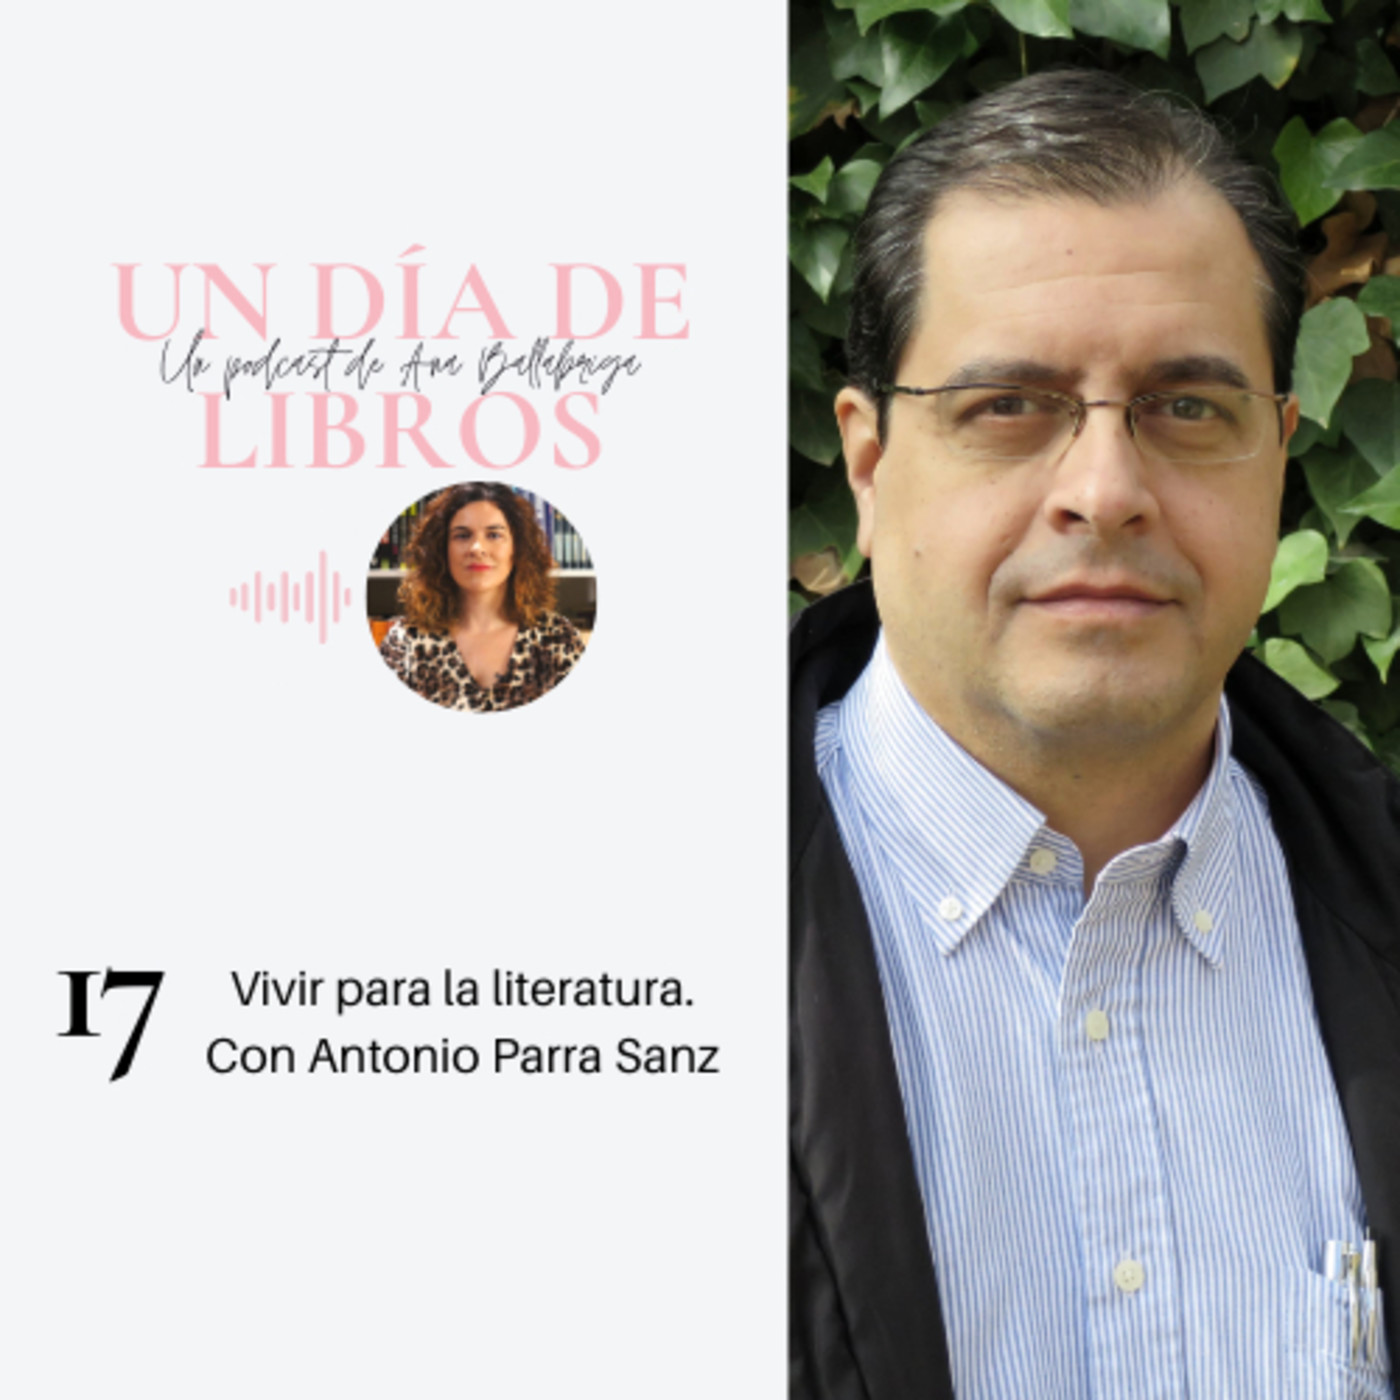 17. Vivir para la literatura. Con Antonio Parra Sanz